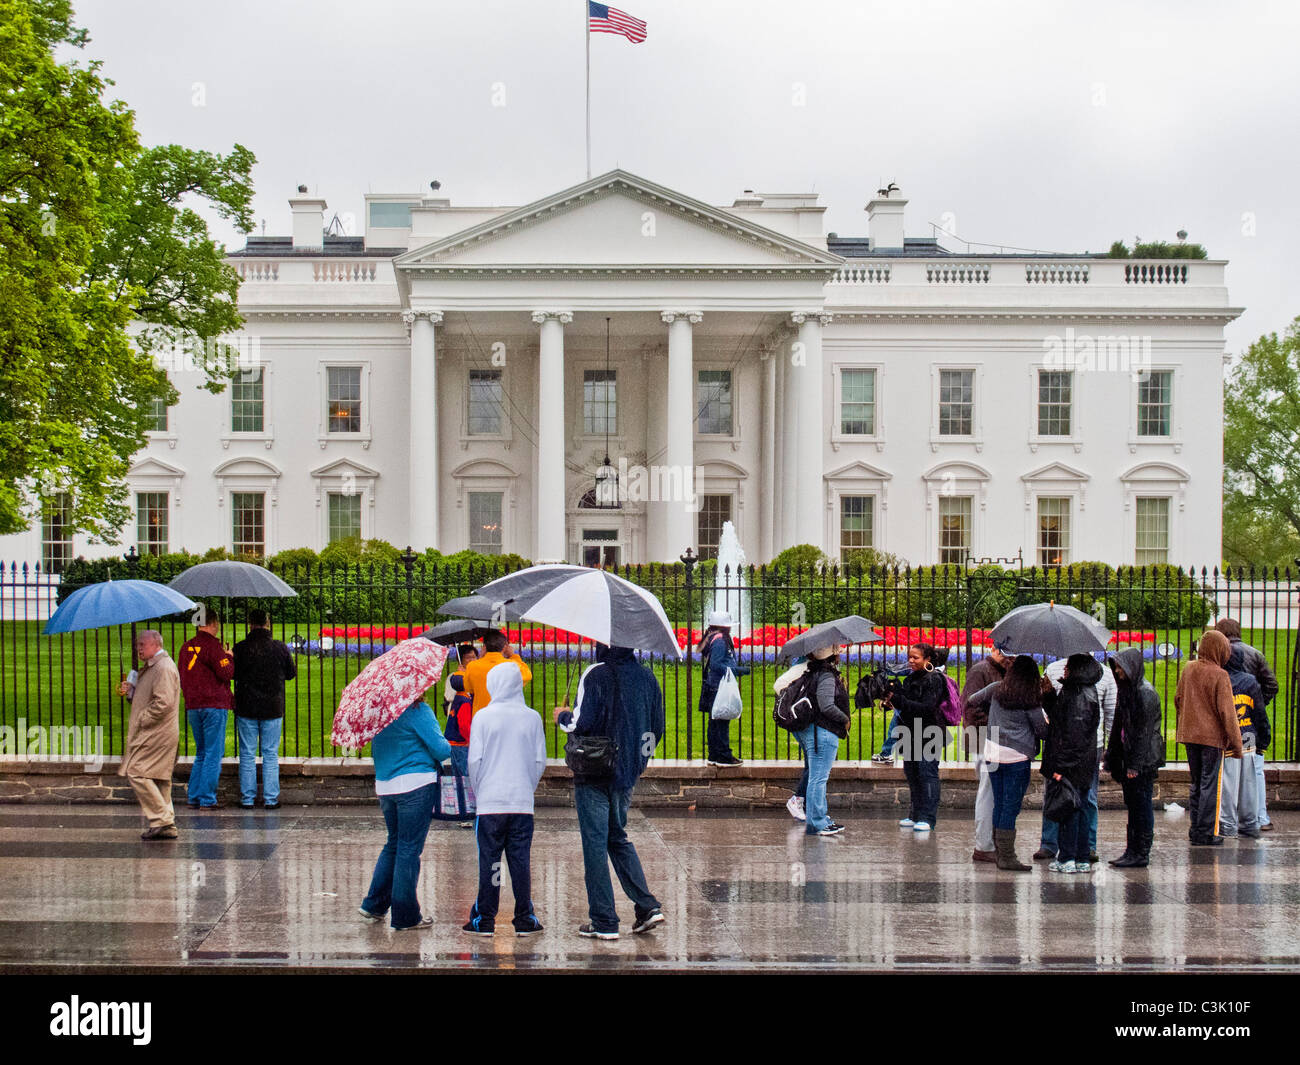 Vistiendo impermeables y llevar paraguas, los turistas se reúnen fuera de la Casa Blanca en Washington, D.C. Foto de stock